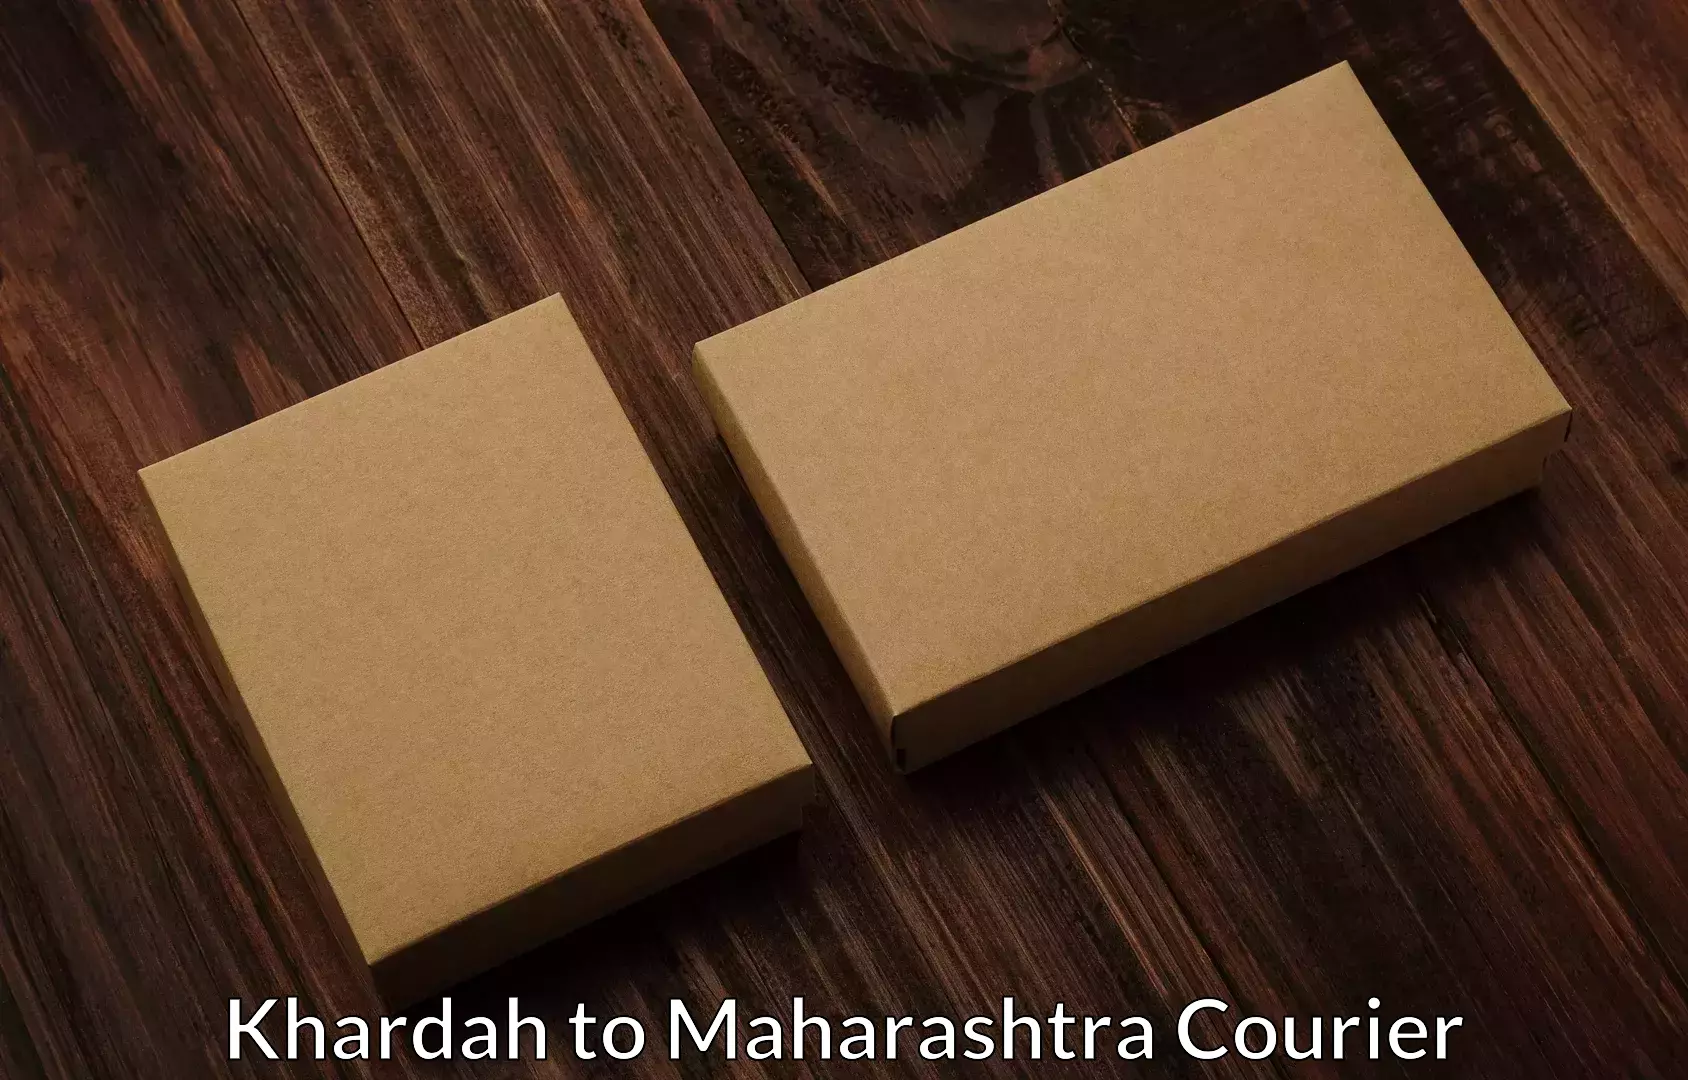 Furniture moving service Khardah to Maharashtra